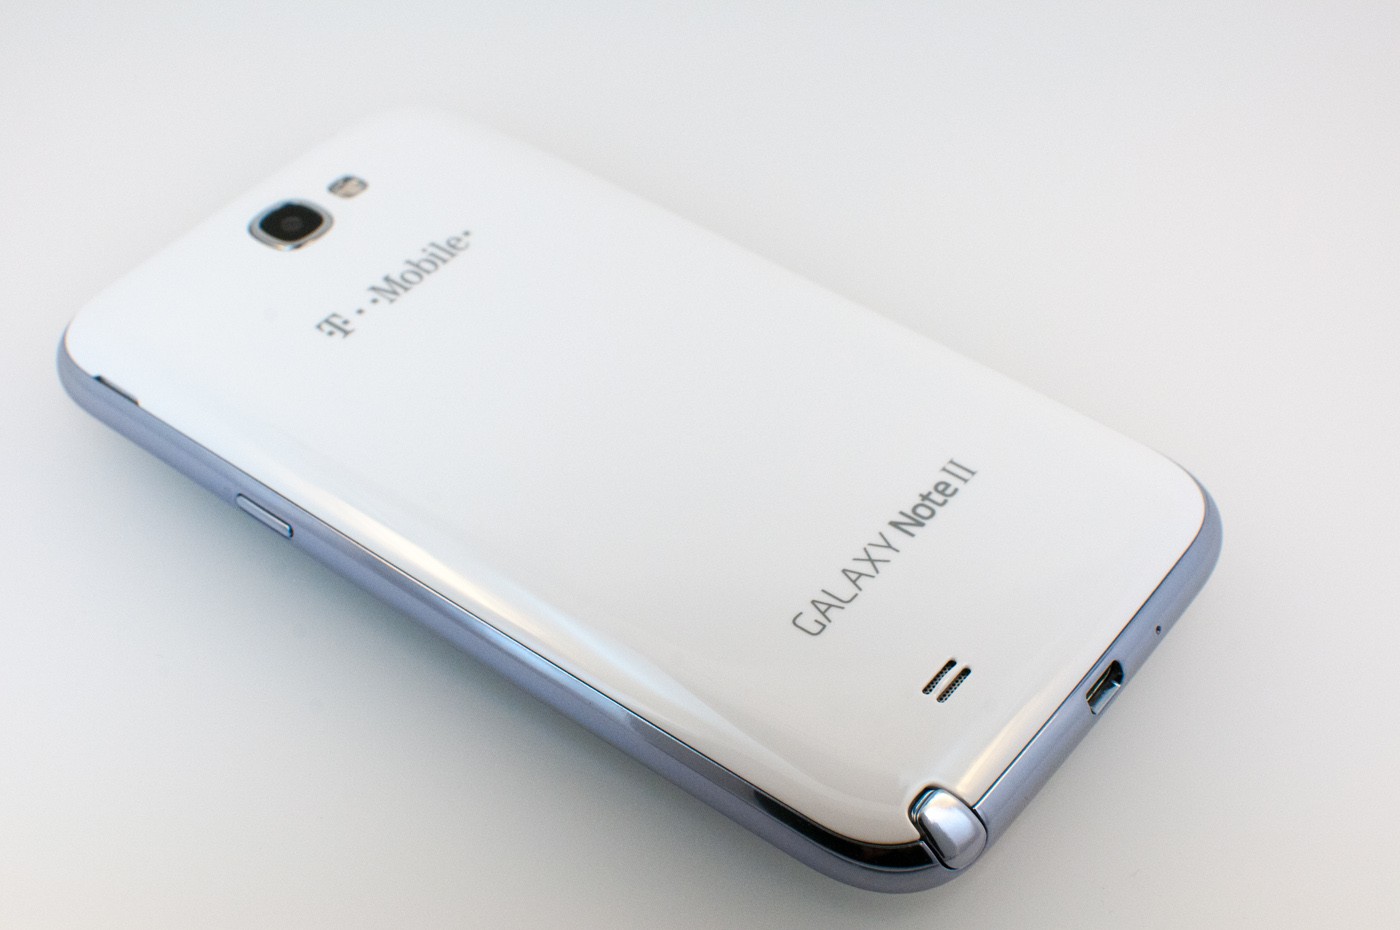 Restaurar/Reparar/Desbloquear T-Mobile Galaxy Note 2 (SGH-T889) usando Odin